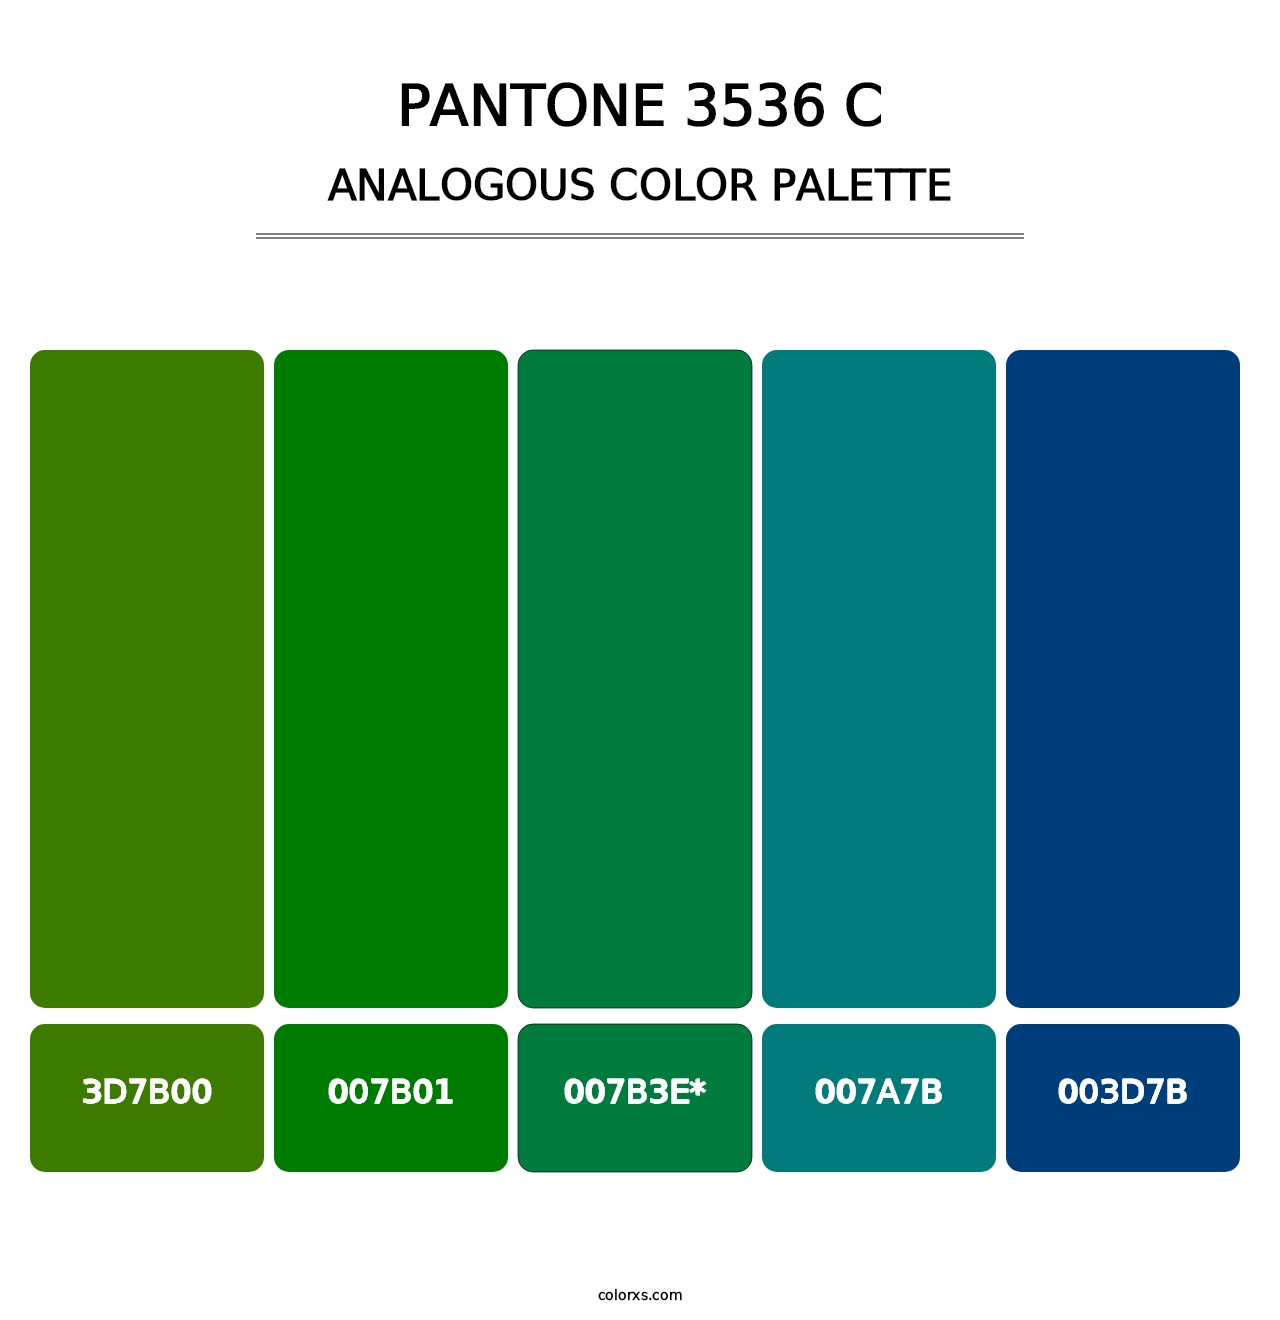 PANTONE 3536 C - Analogous Color Palette